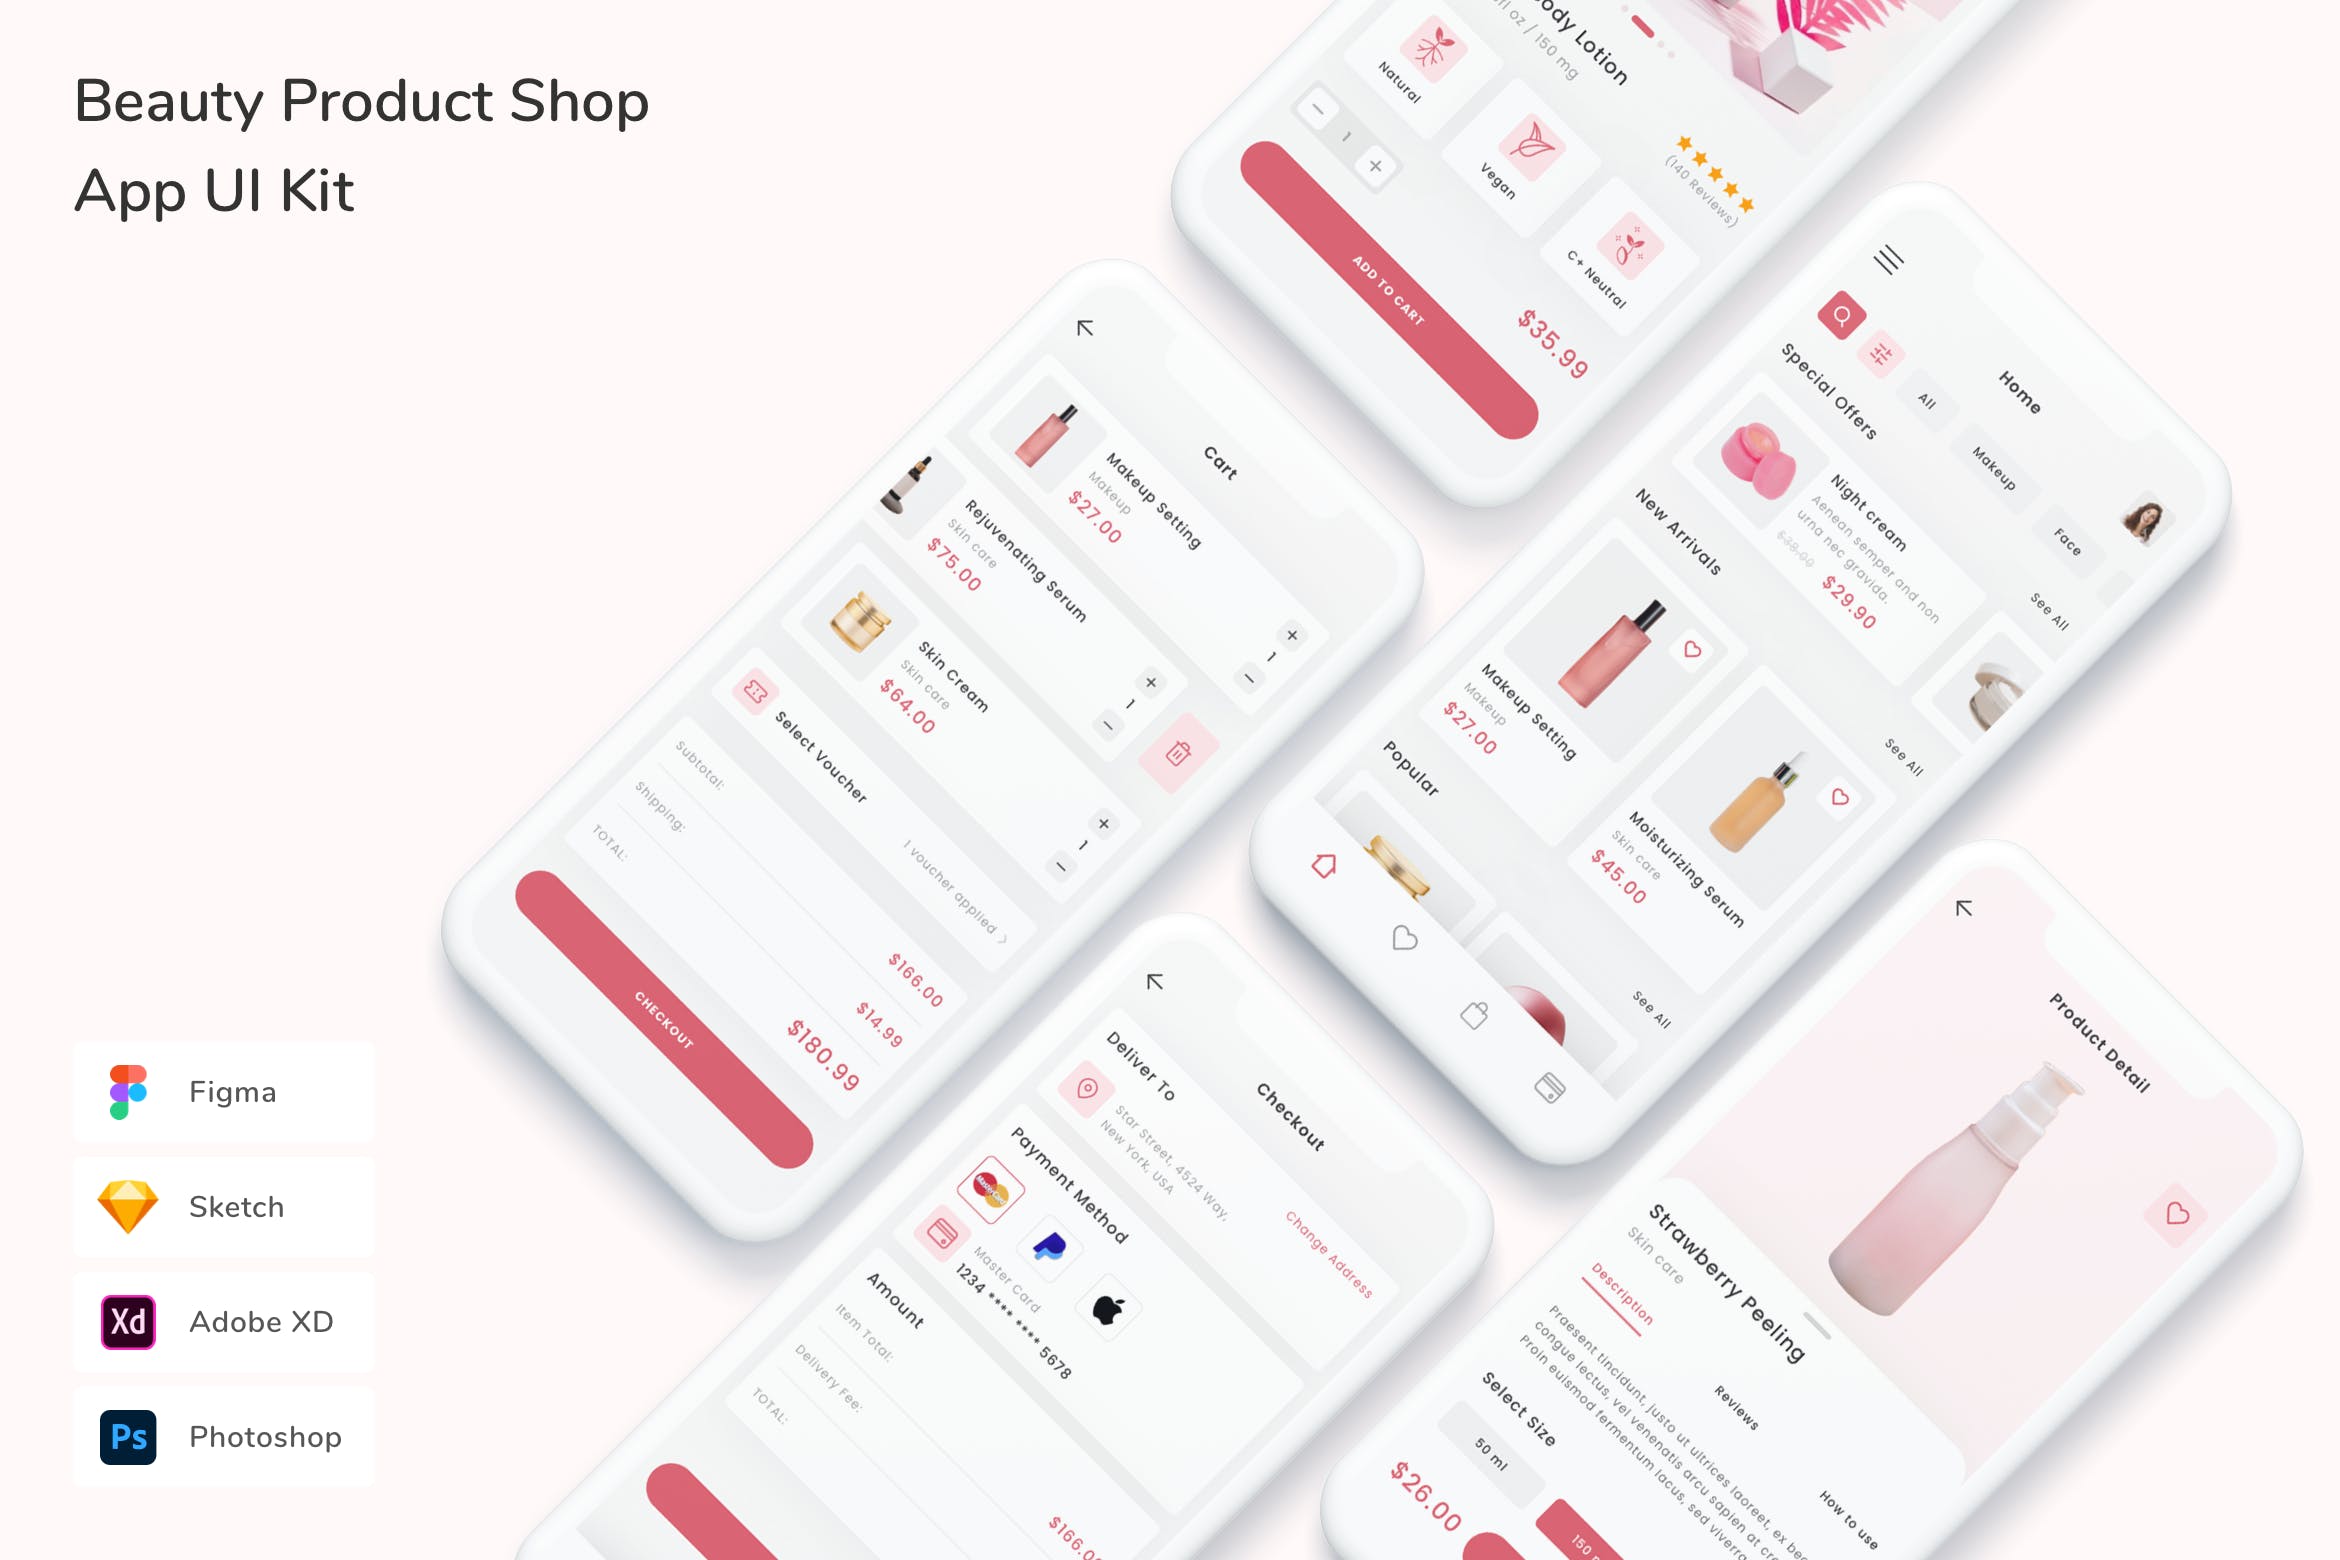 美容产品商店移动应用UI设计套件 Beauty Product Shop App UI Kit APP UI 第1张